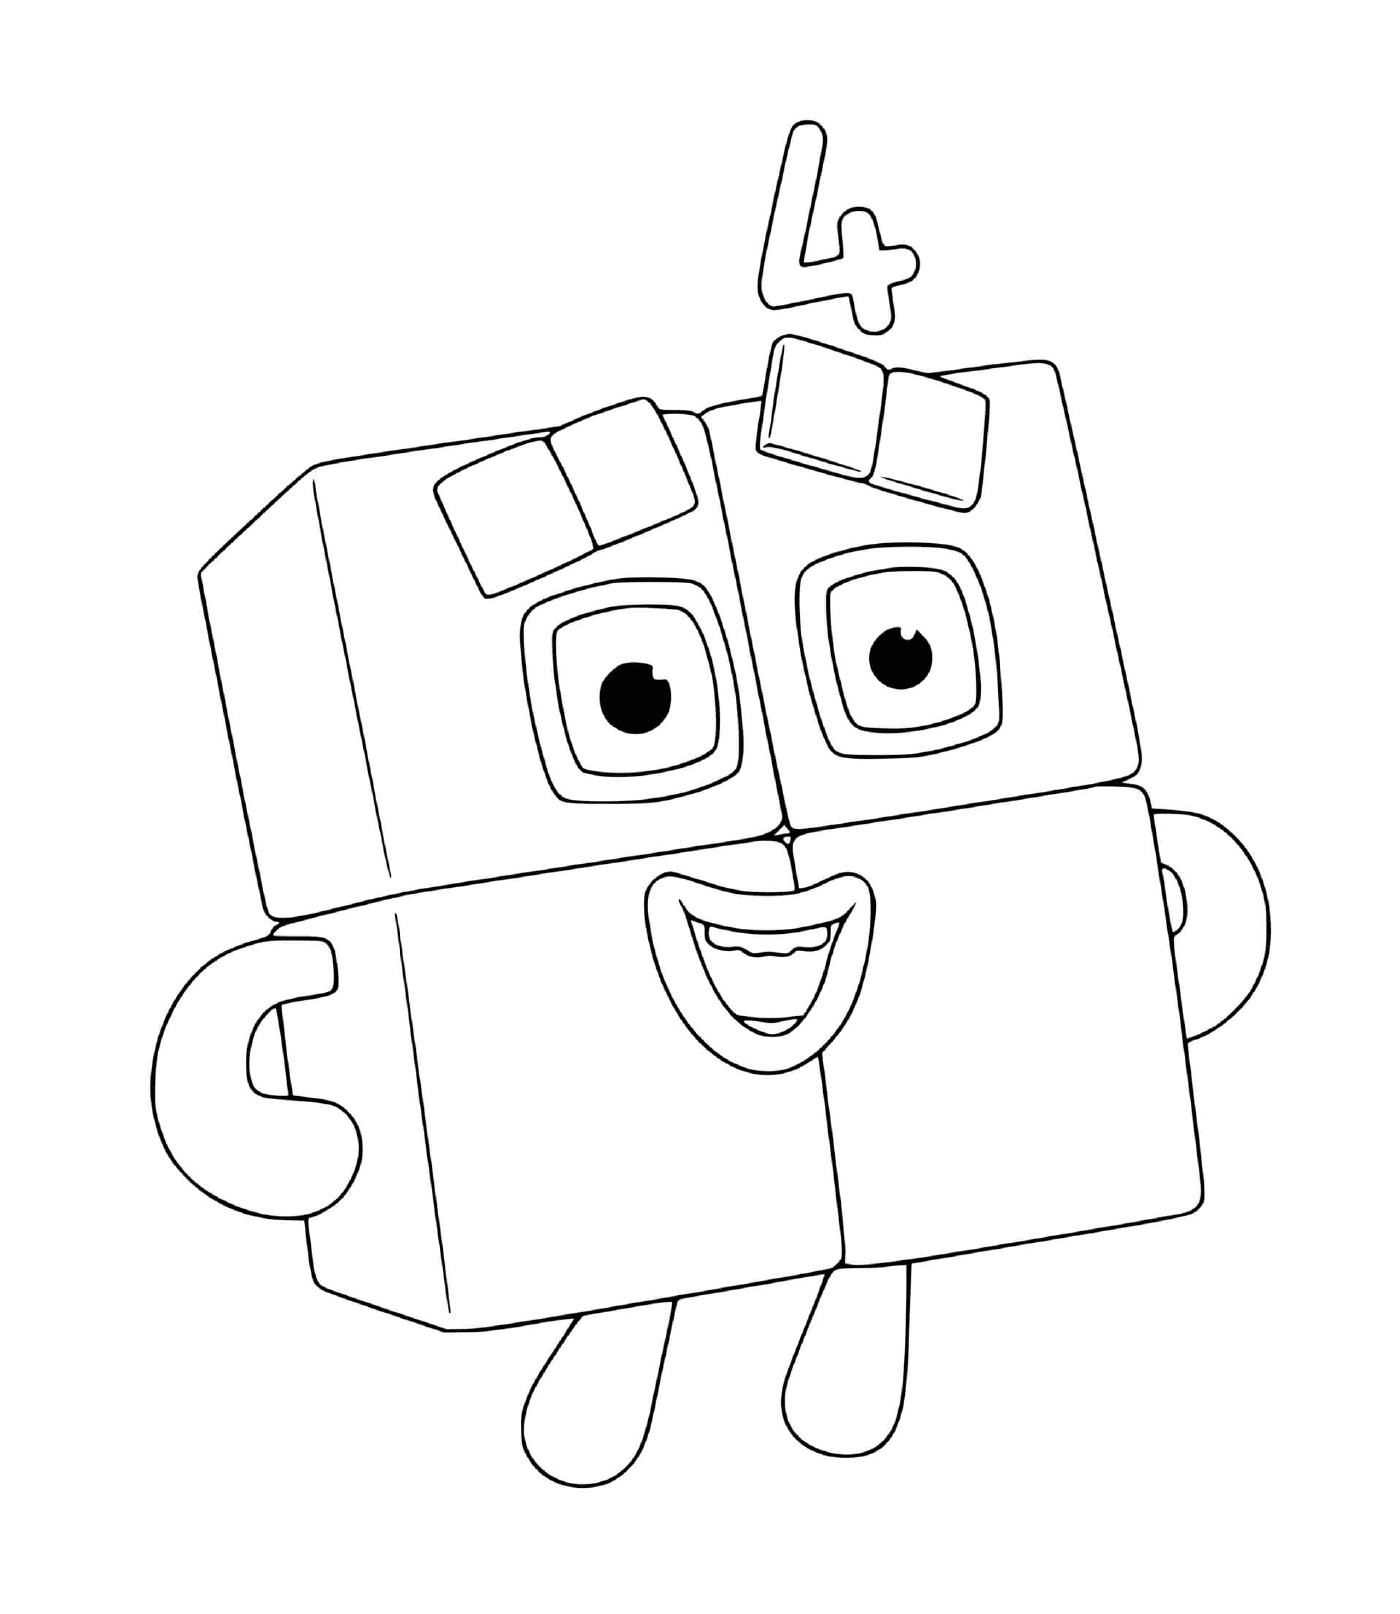   Numéro 4 des Numberblocks, un robot jouet 